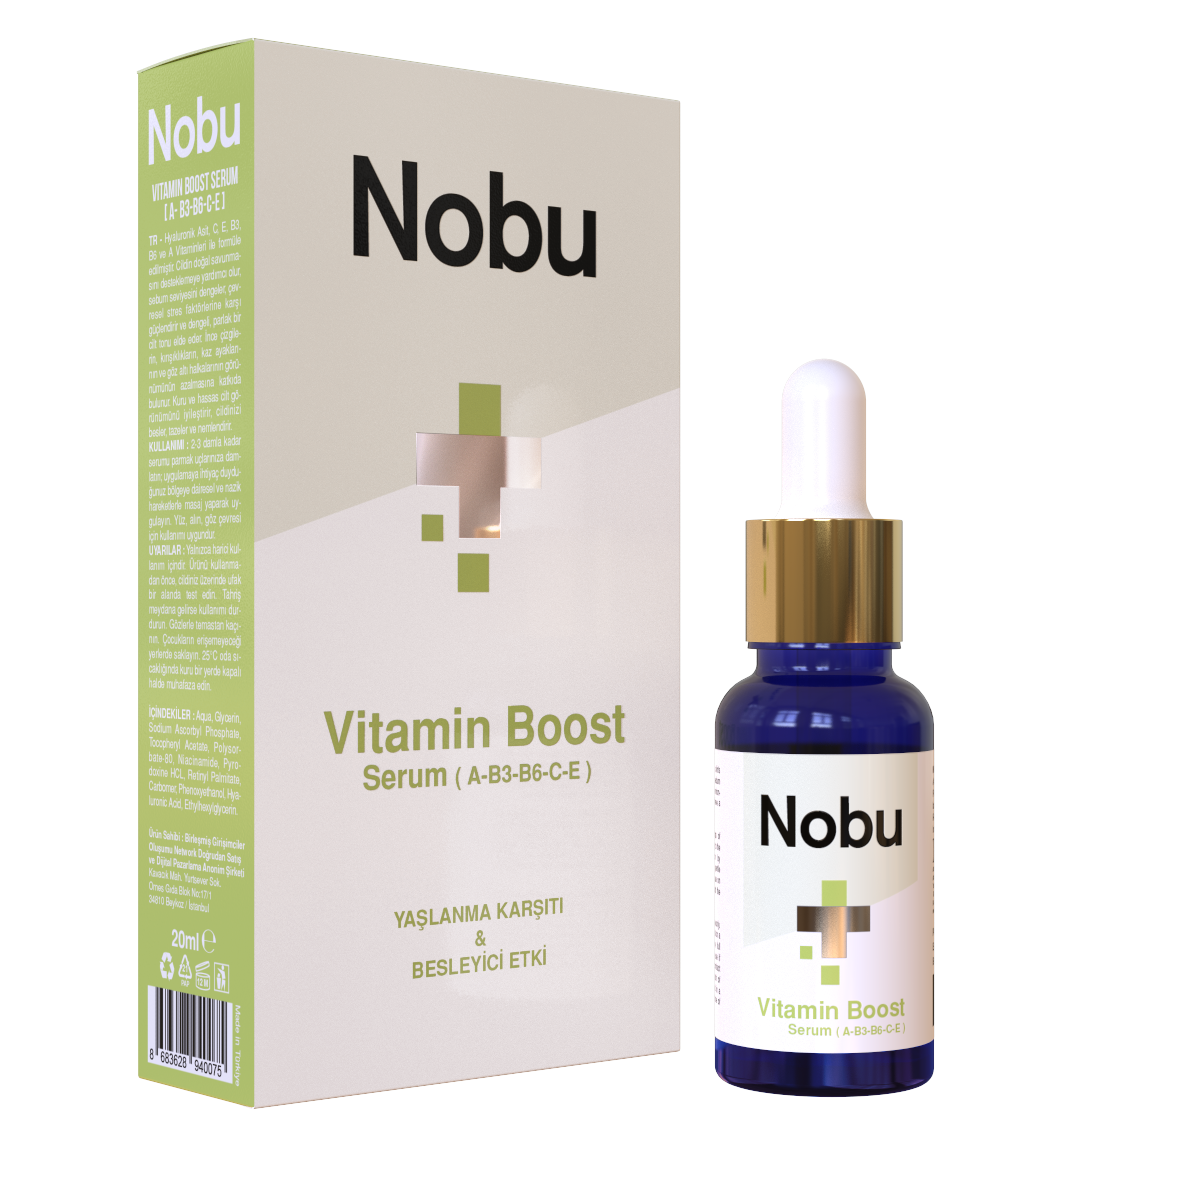 Nobu Vitamin Boost Serum (A-B3-B6-C-E) - 20 ml